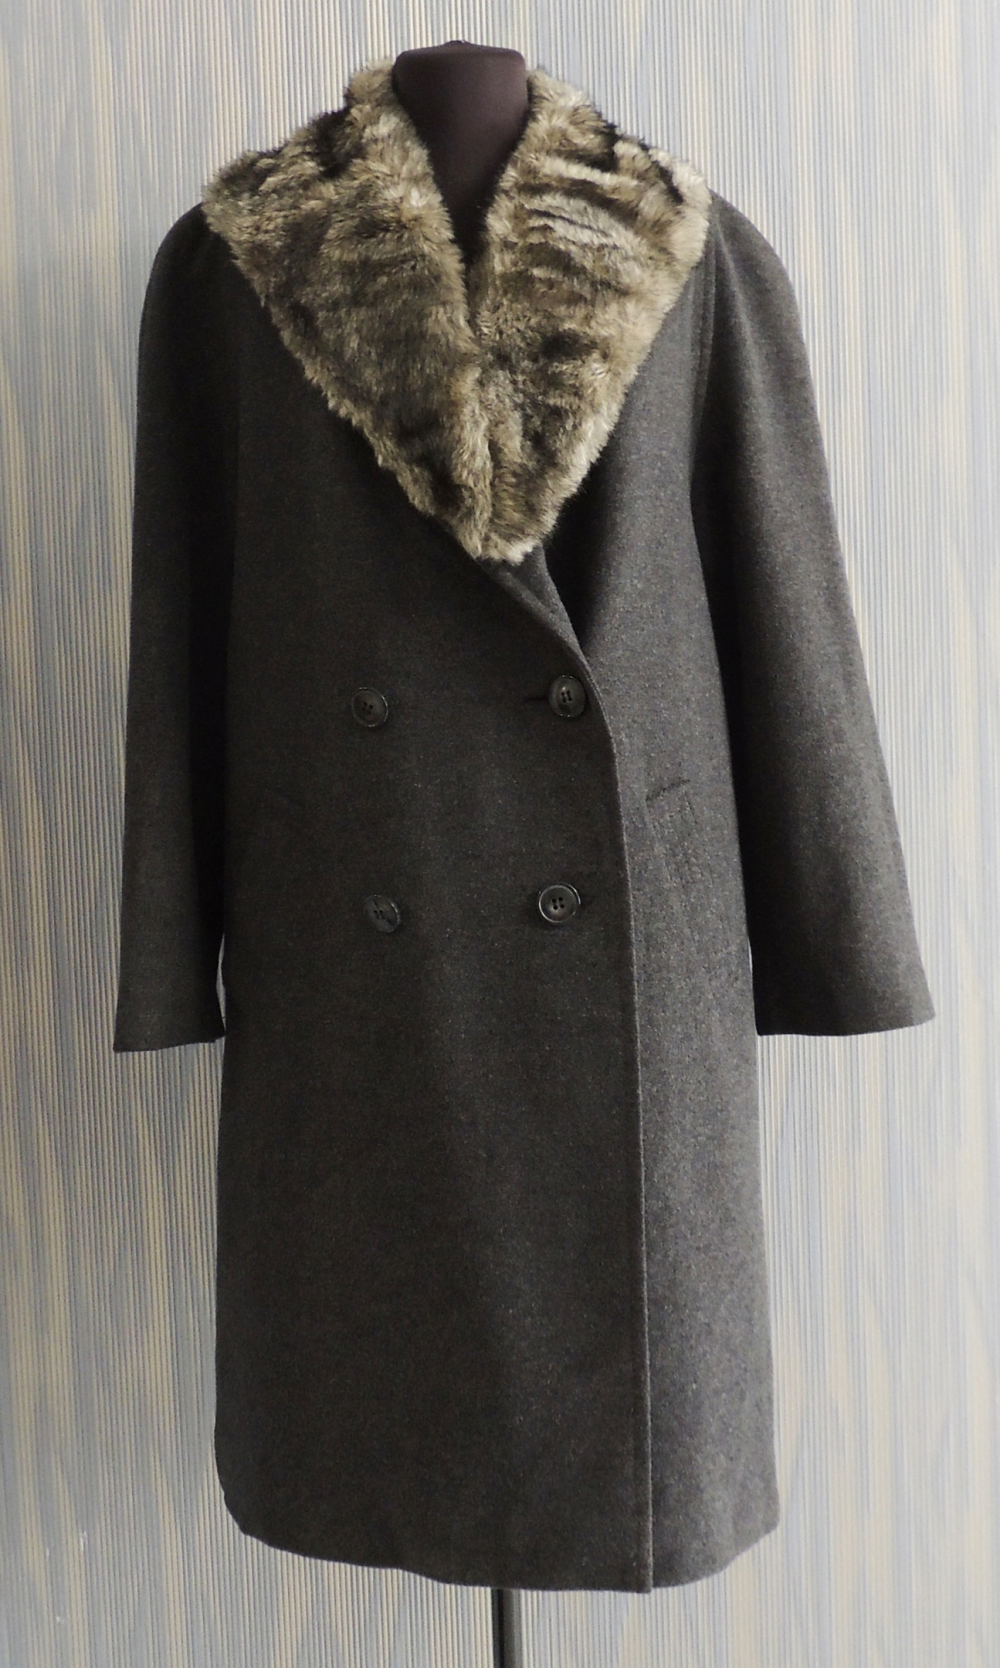 Пальто Austerlitz. 48 размер